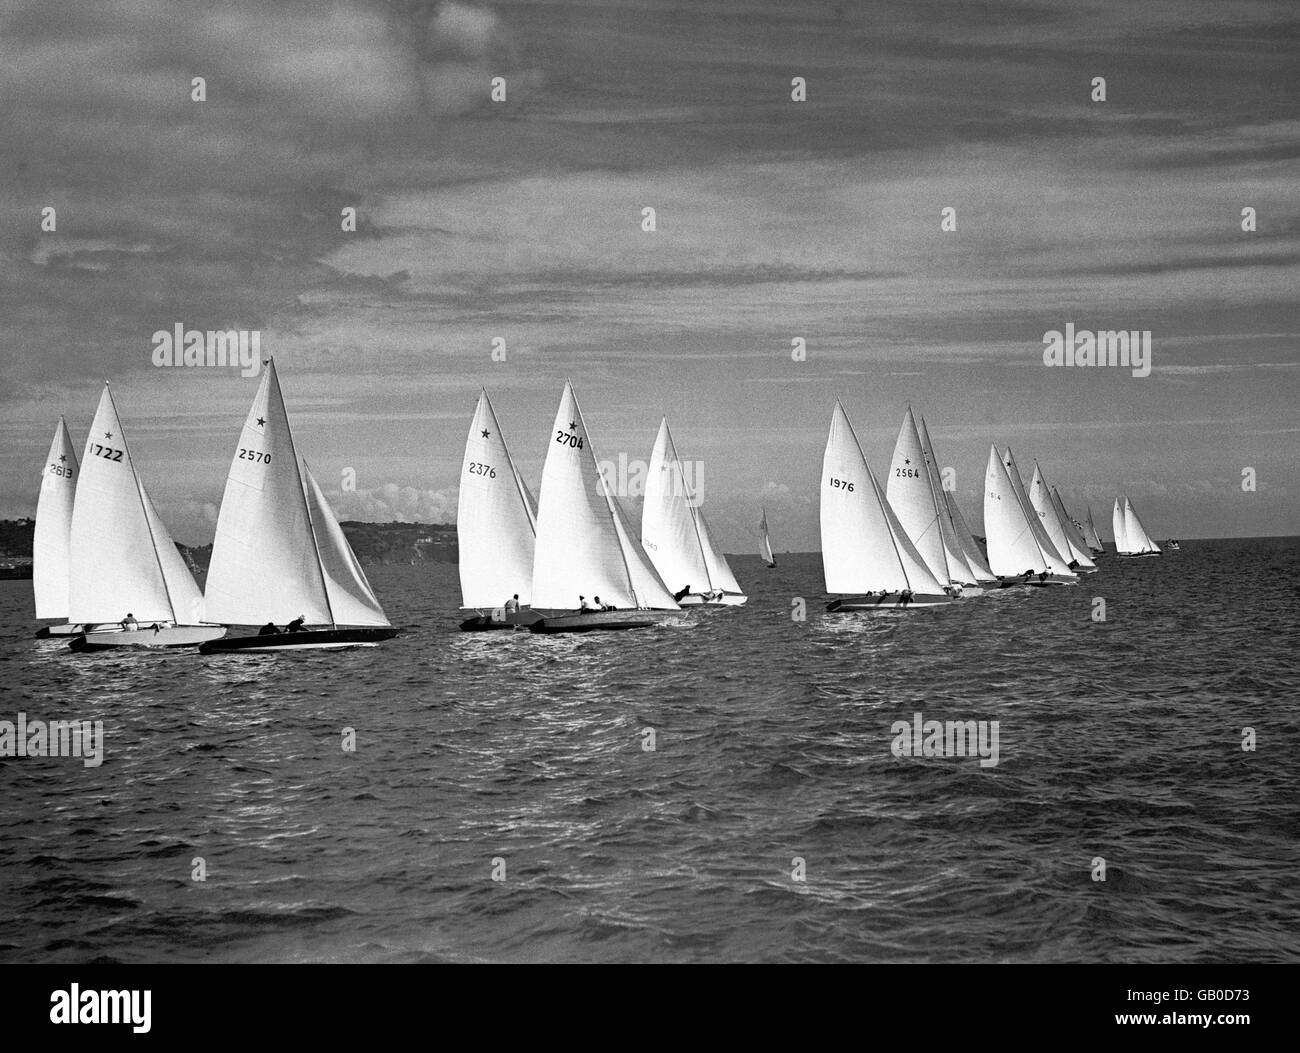 Jeux Olympiques de Londres 1948 - voile - Torbay.Une course de classe Star en cours, yacht 1976 est l'entrée de Grande-Bretagne 'Gem II'. Banque D'Images